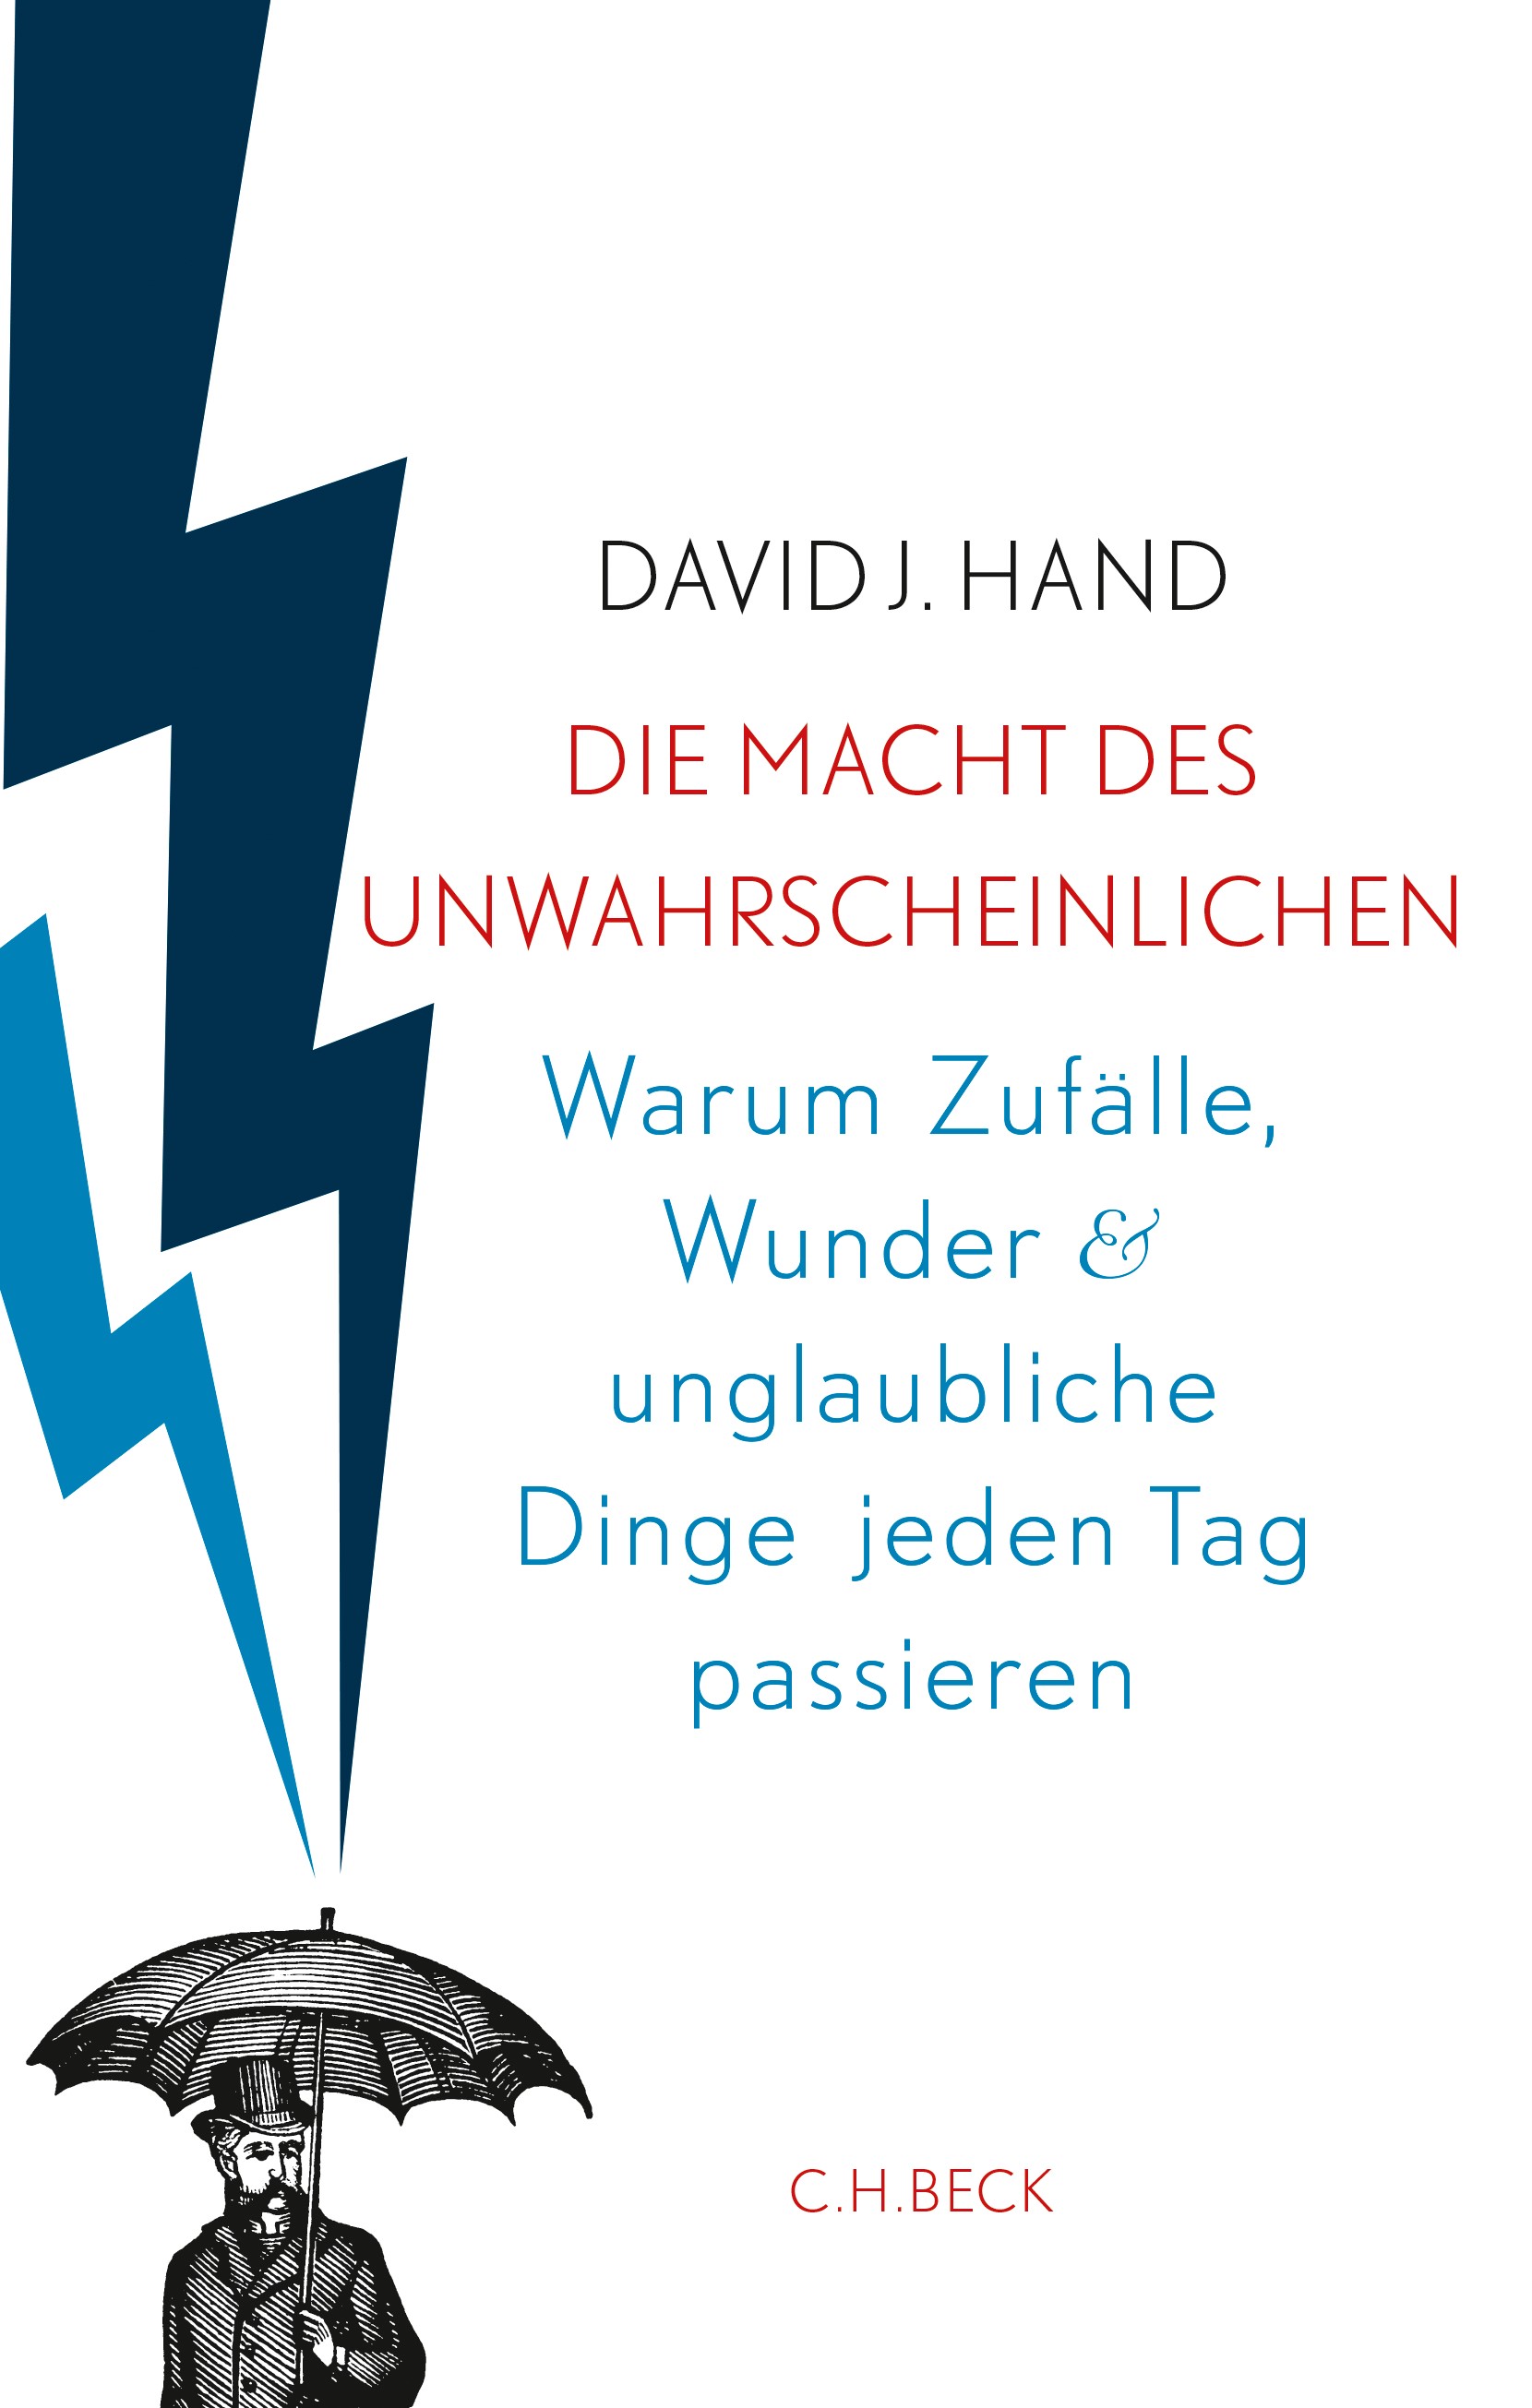 Cover: Hand, David, Die Macht des Unwahrscheinlichen